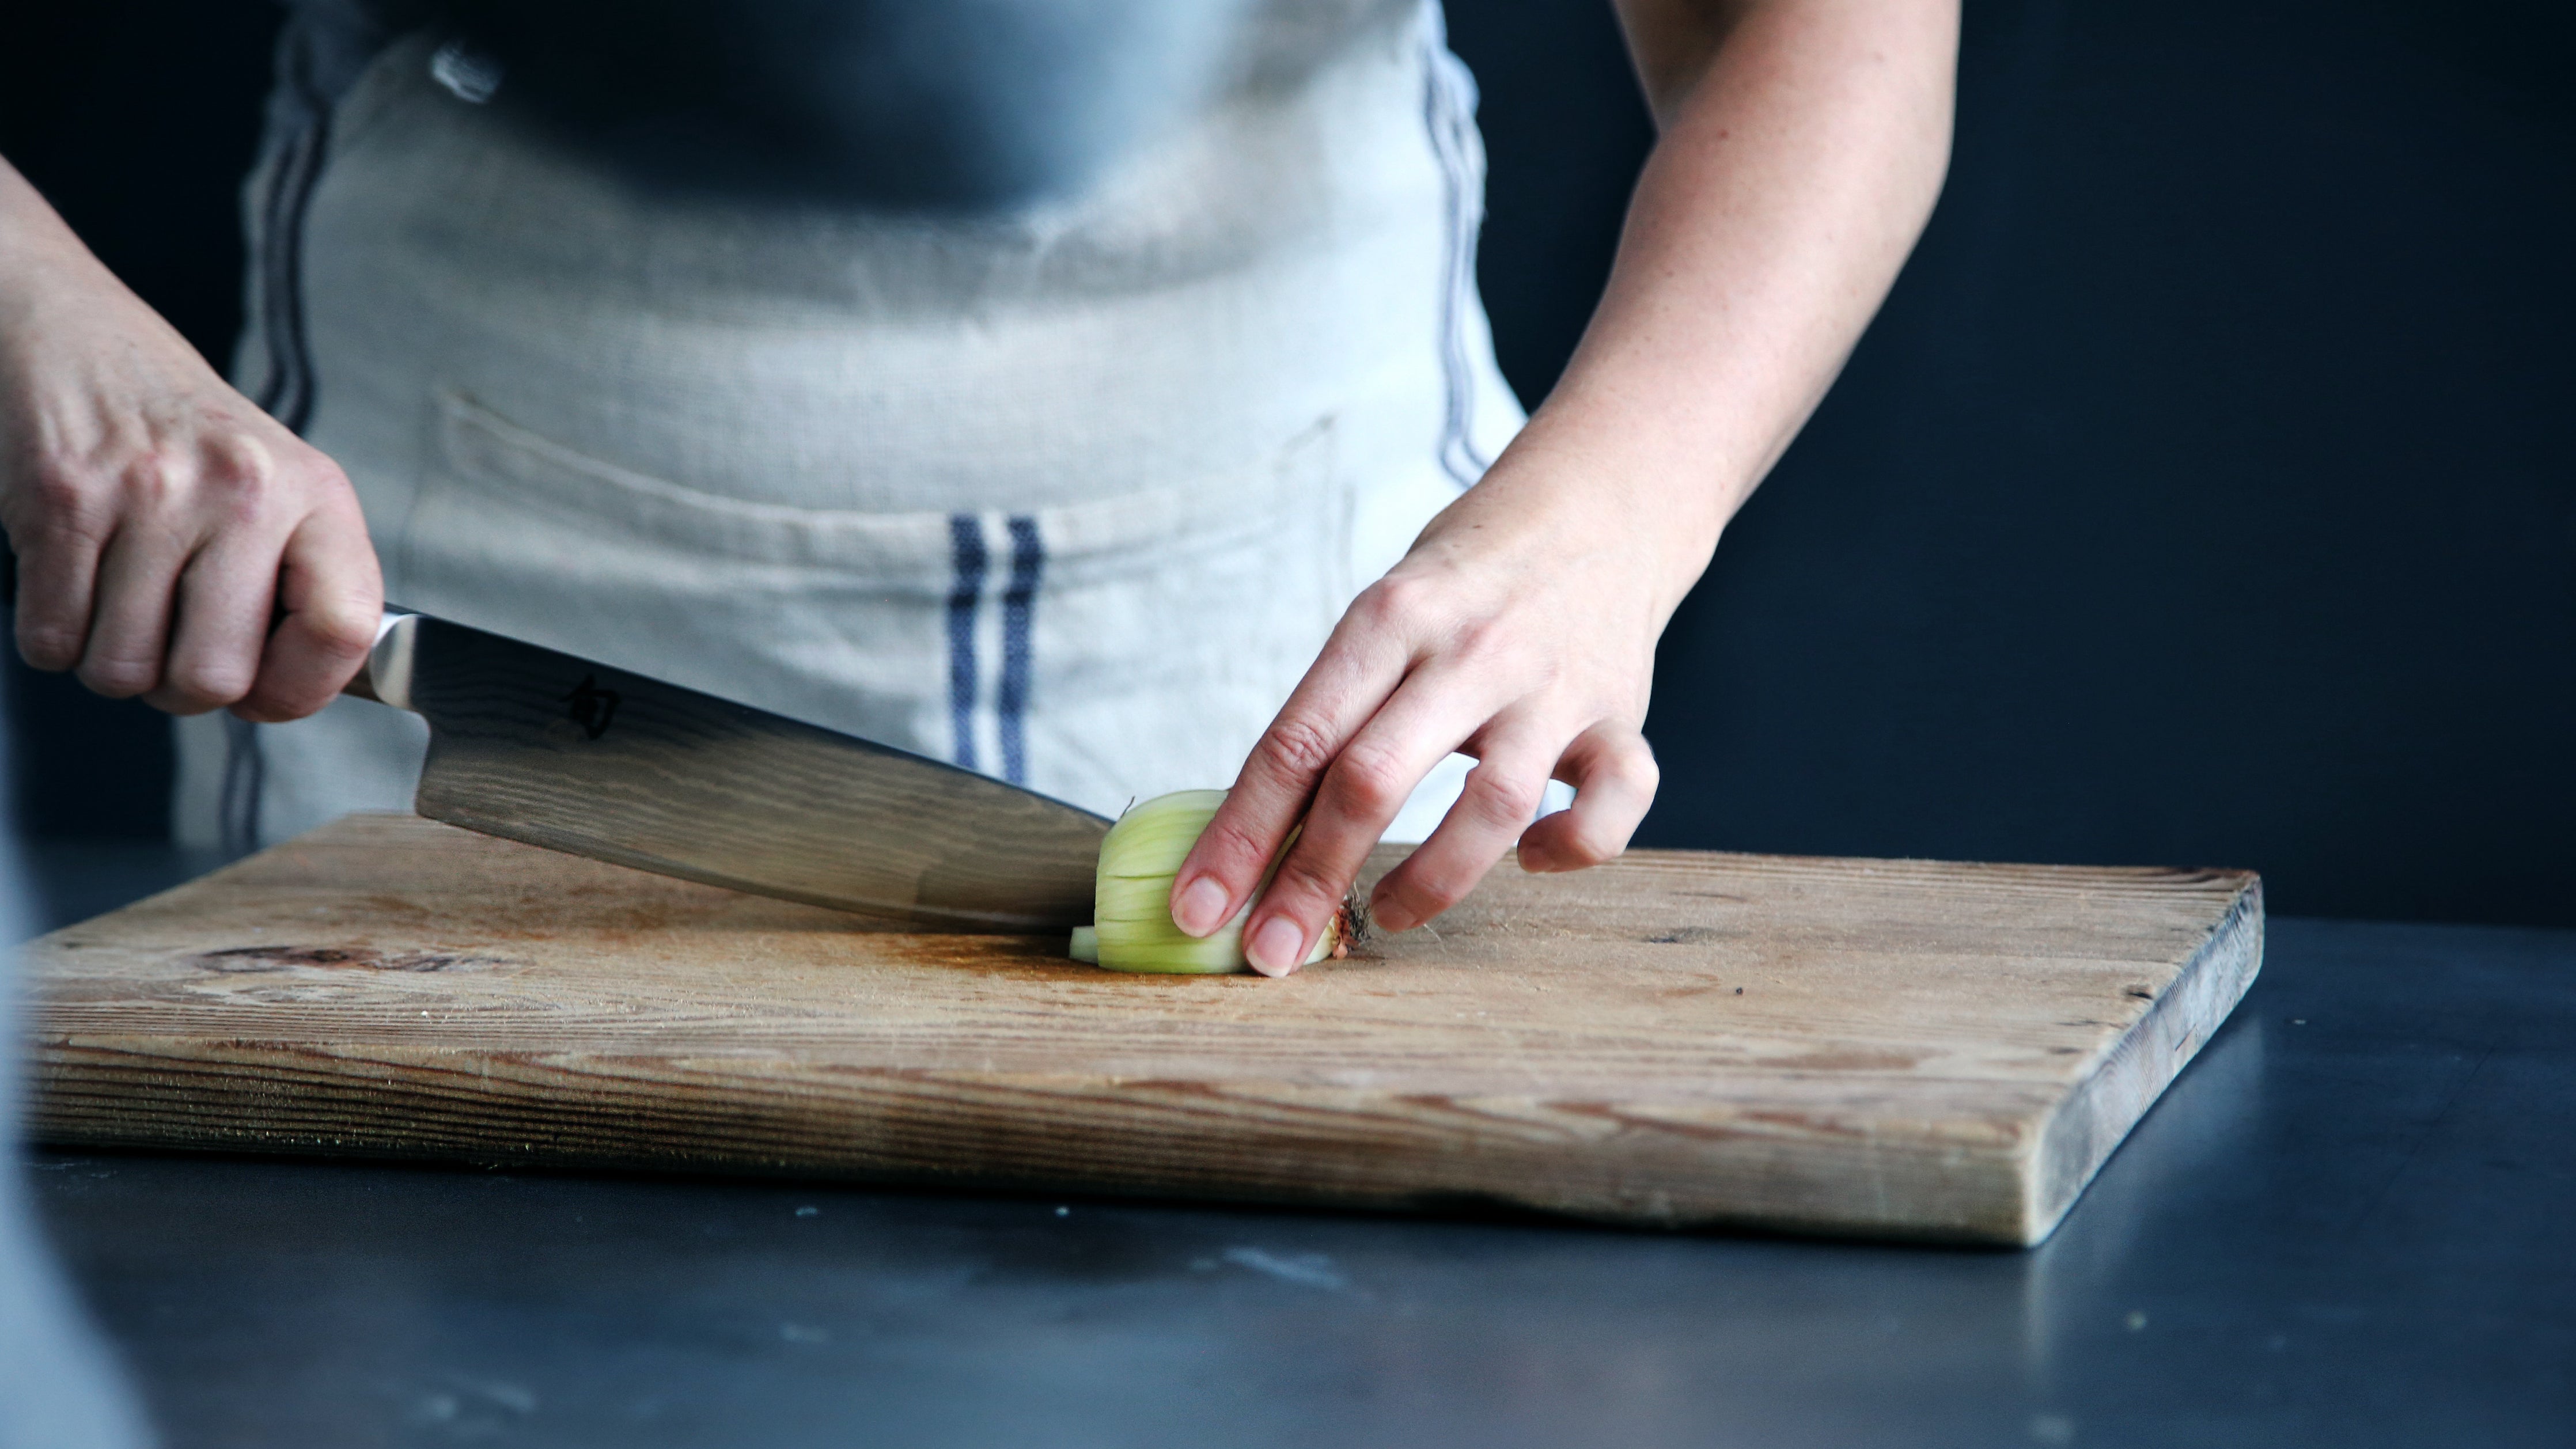 Knife Skills - Vegetable Yaki Soba (Plant-based) @ Gipton